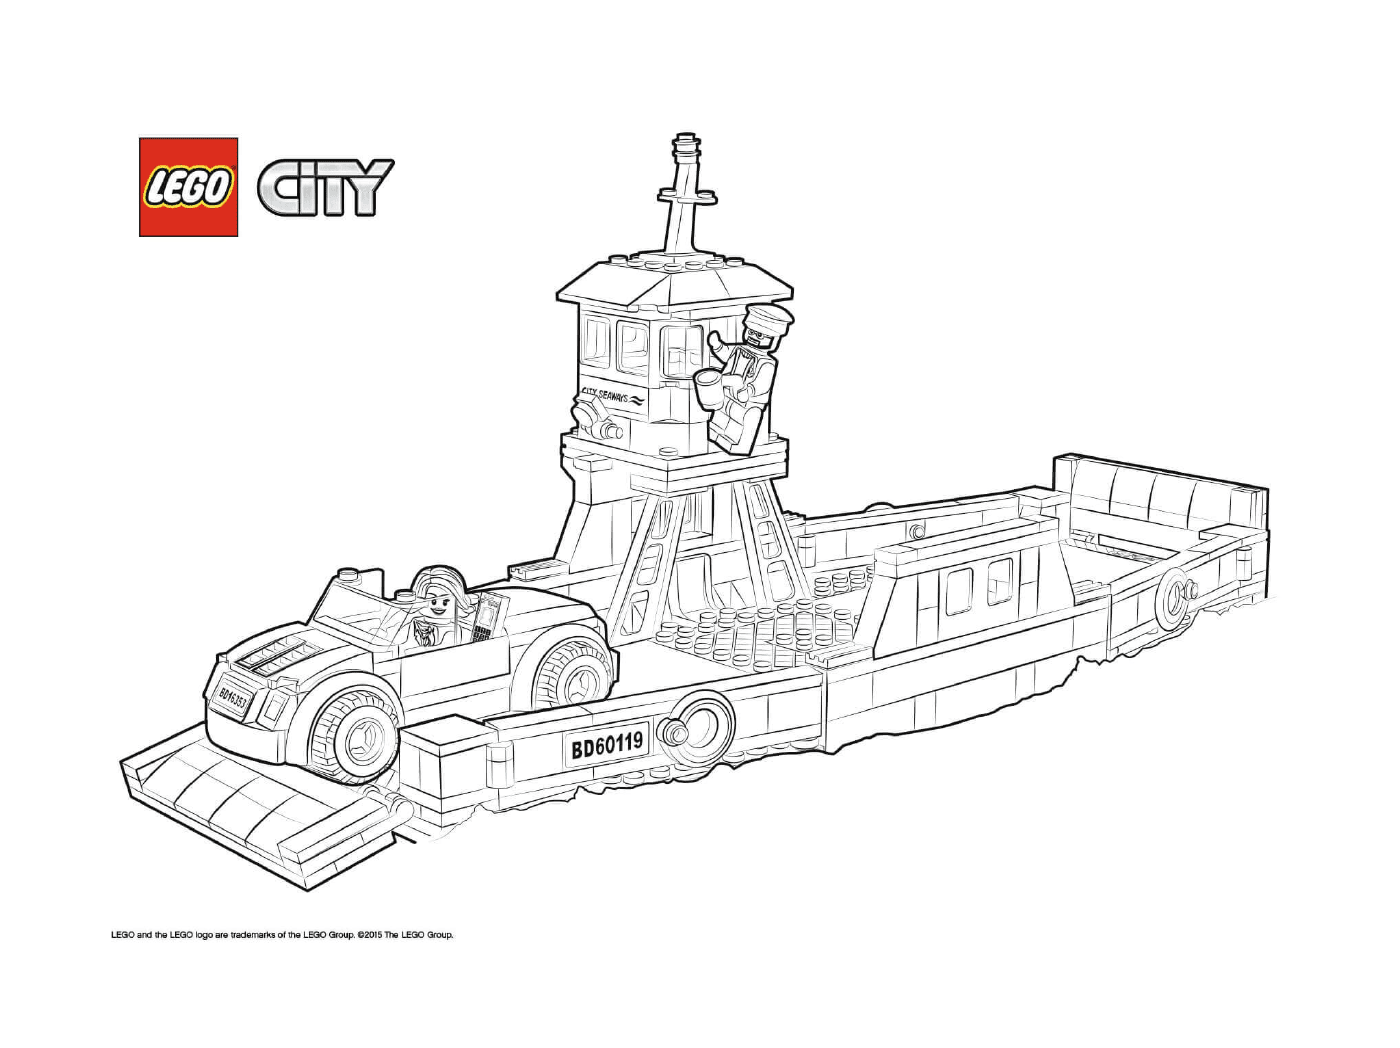   Ferry de transport de bateaux Lego City 